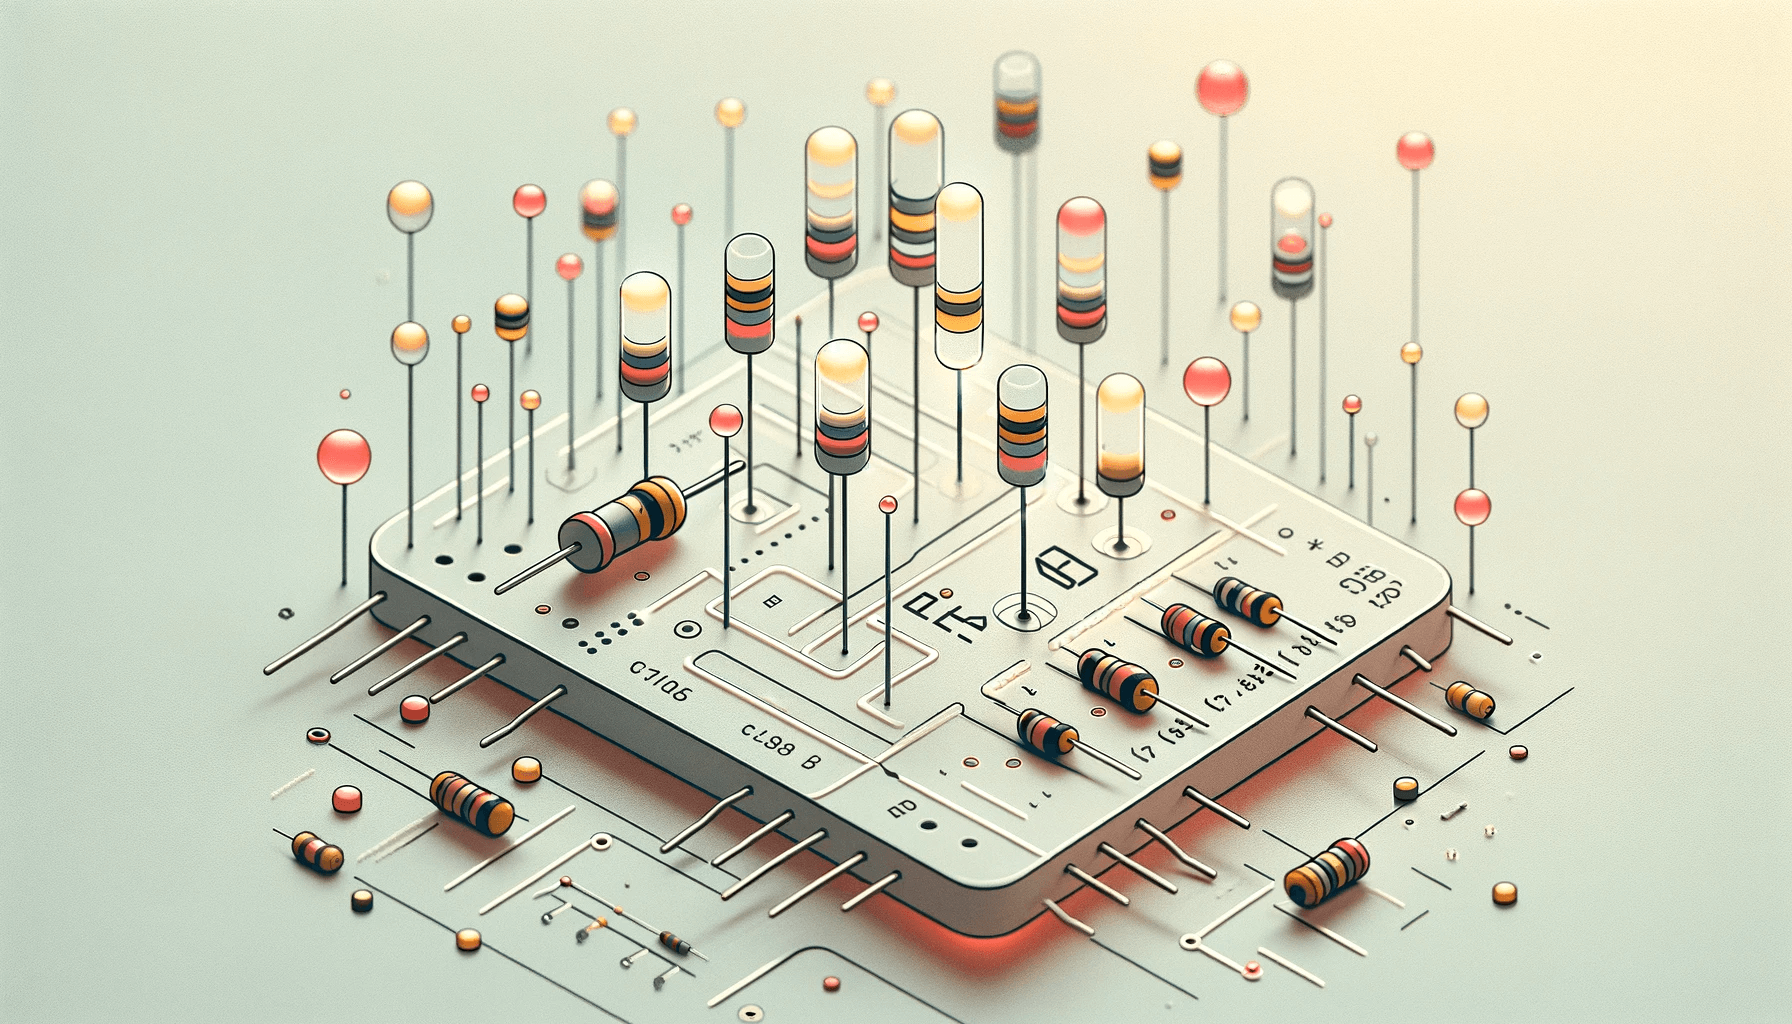 LED Series Resistor Calculator